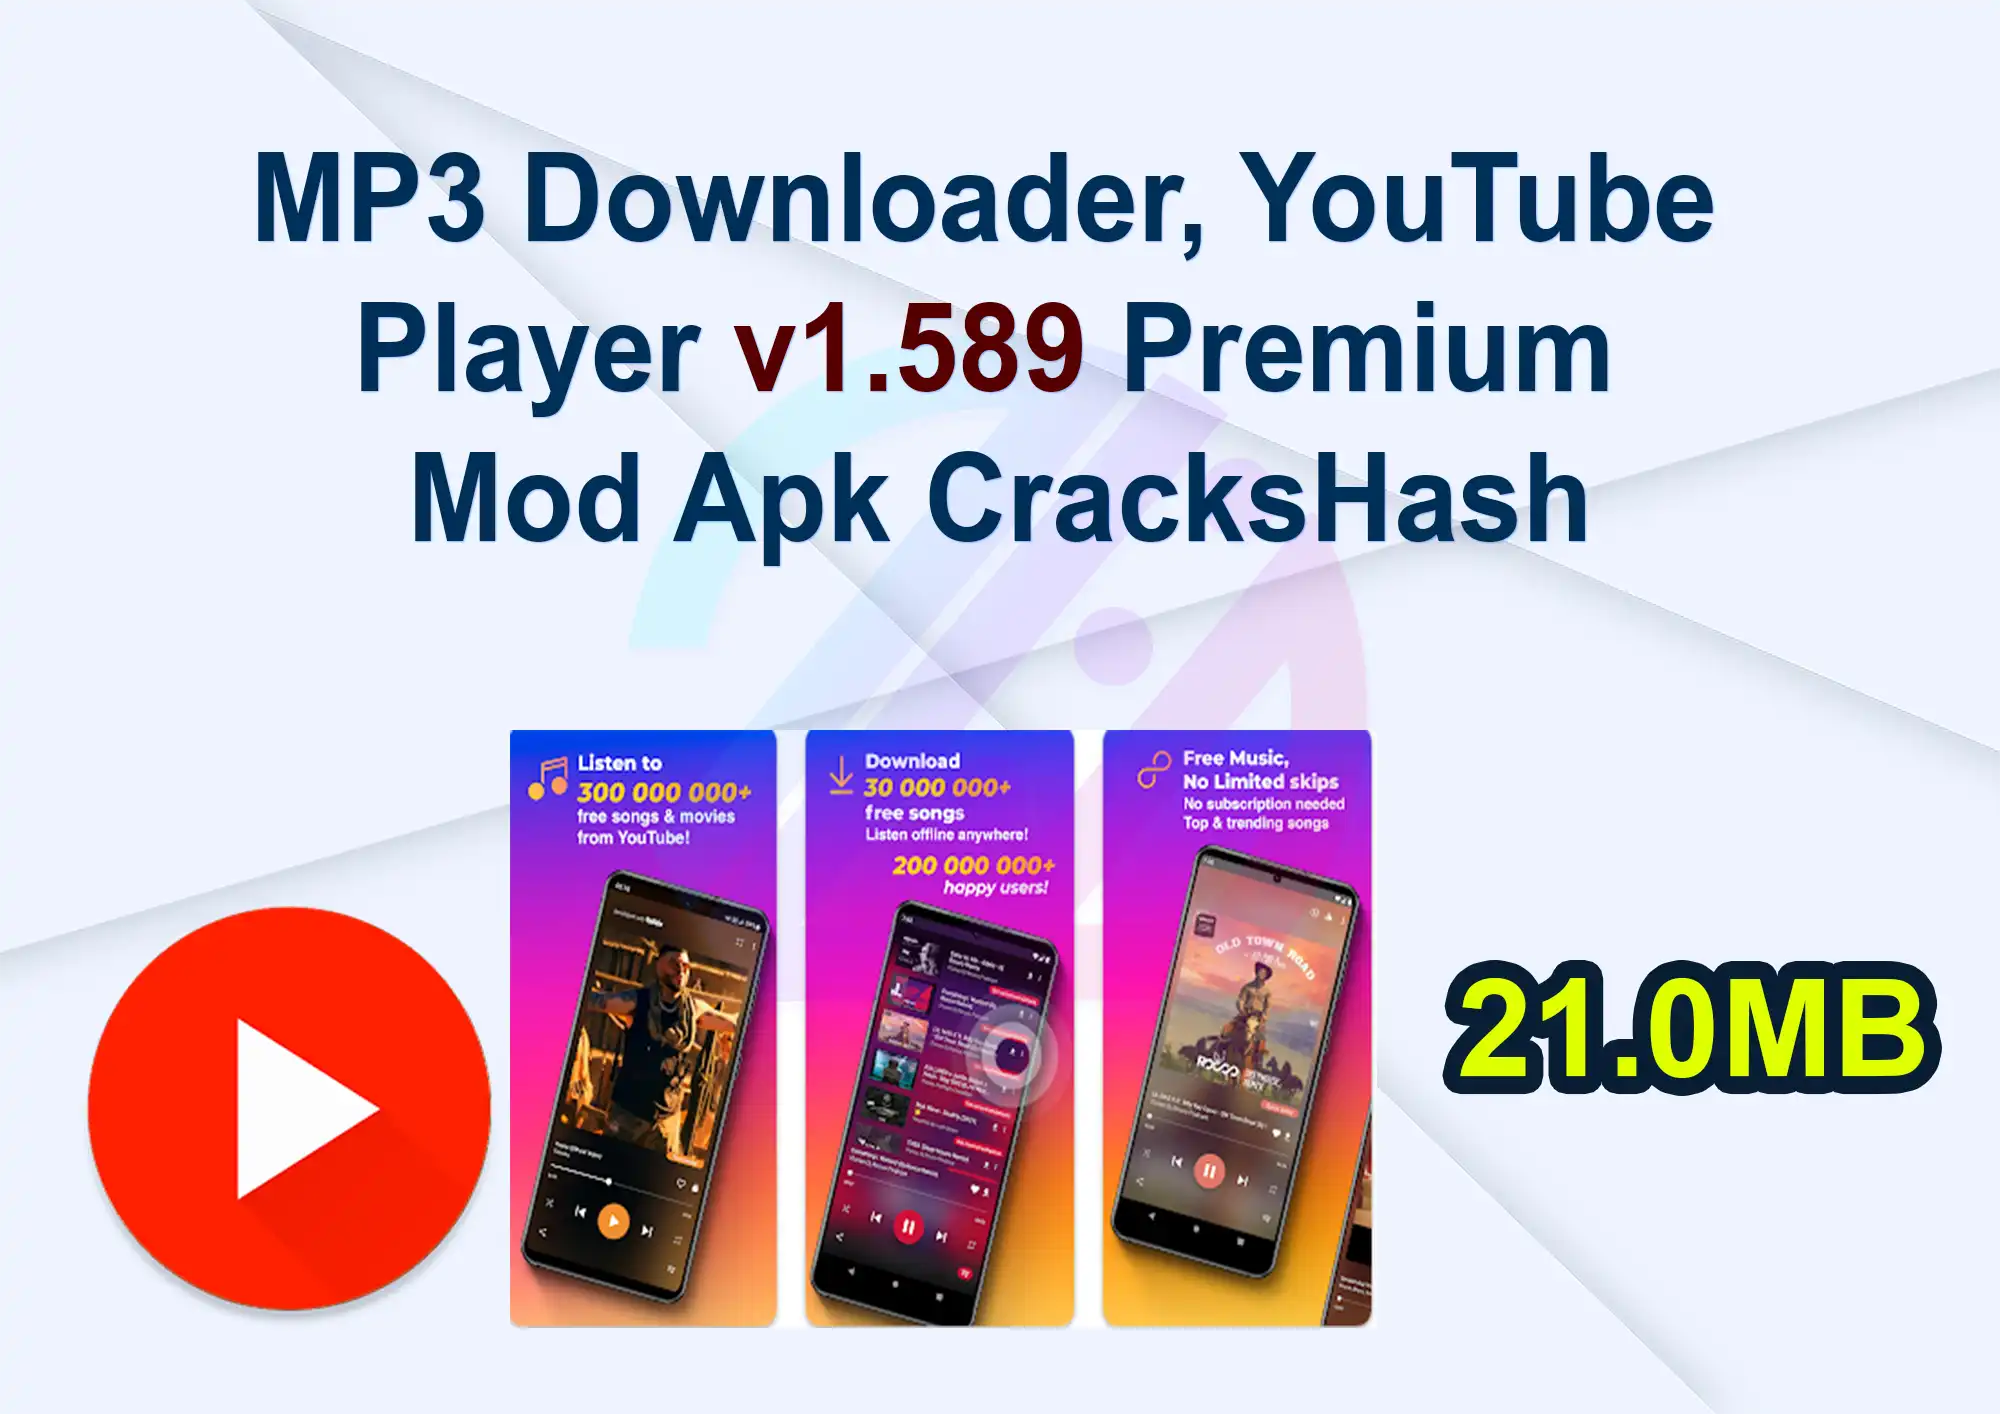 MP3 Downloader, YouTube Player v1.589 Premium Mod Apk